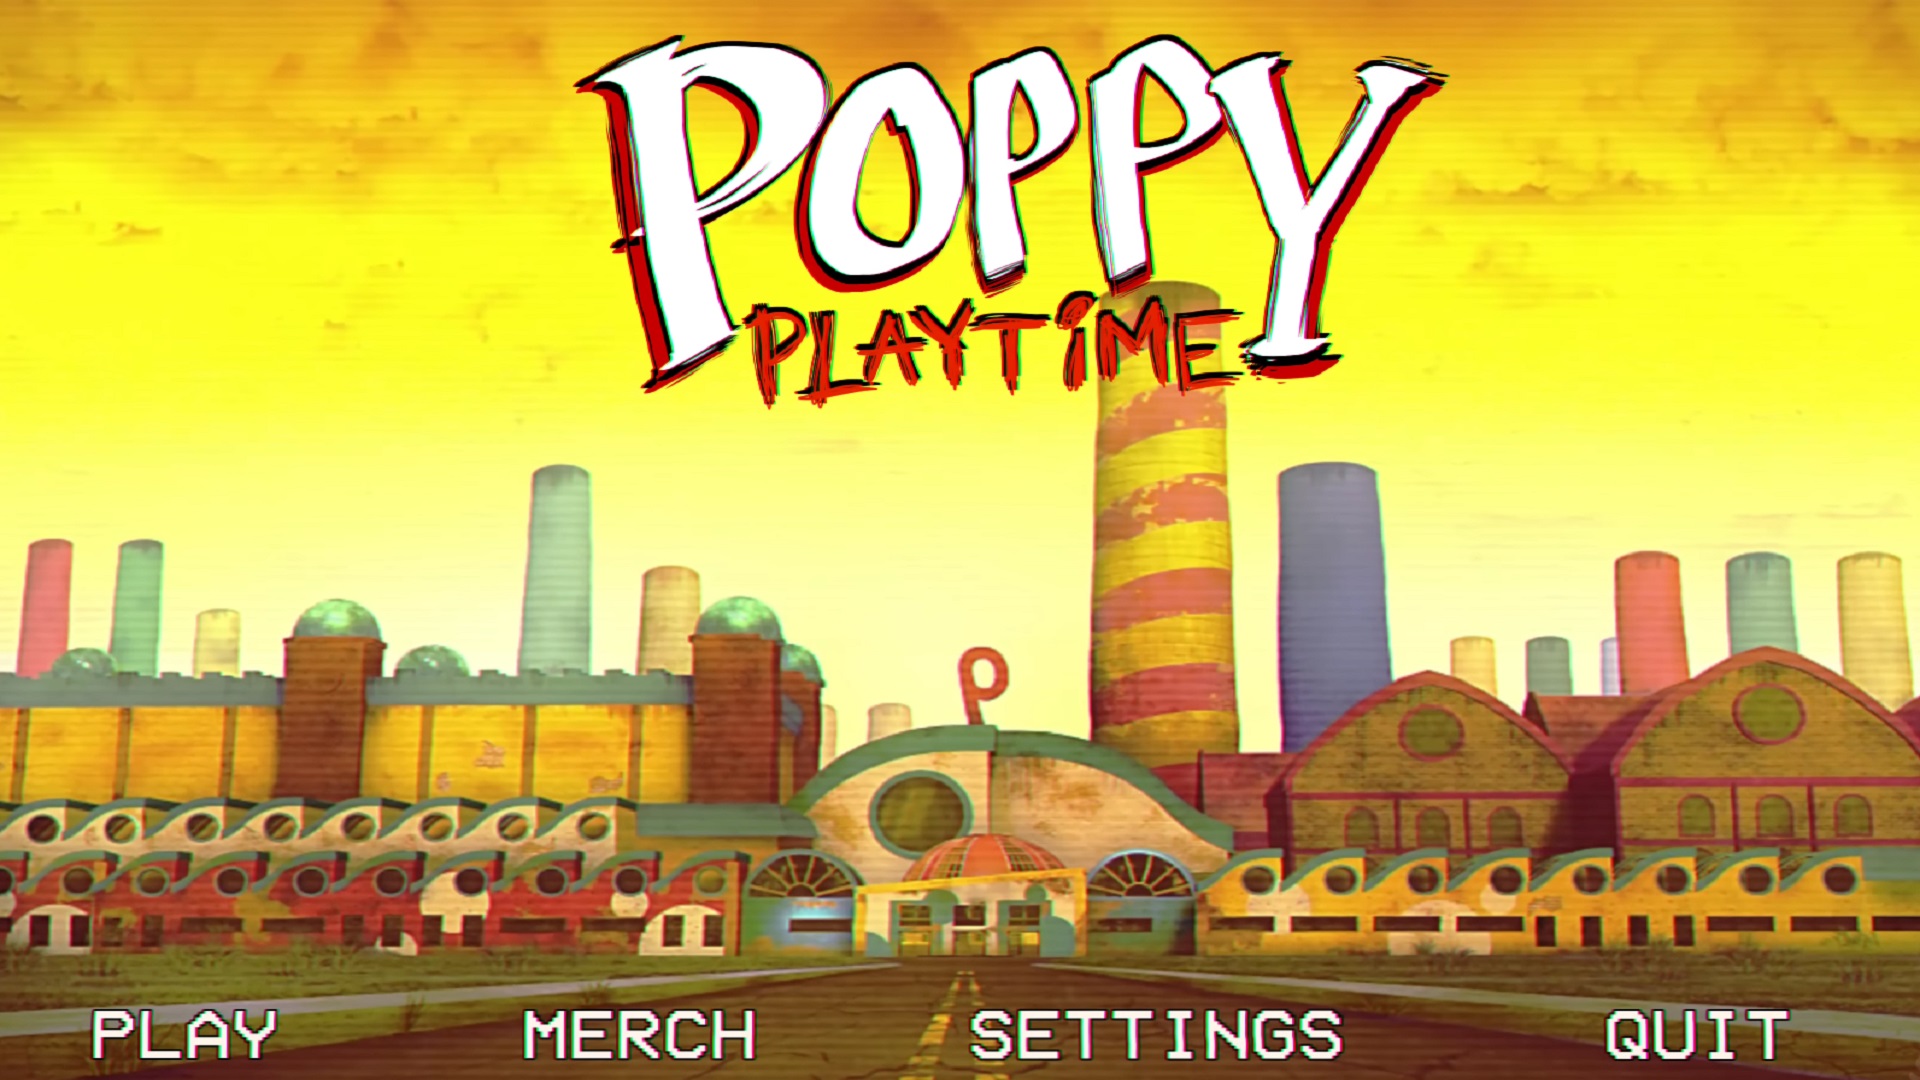 poppy playtime international